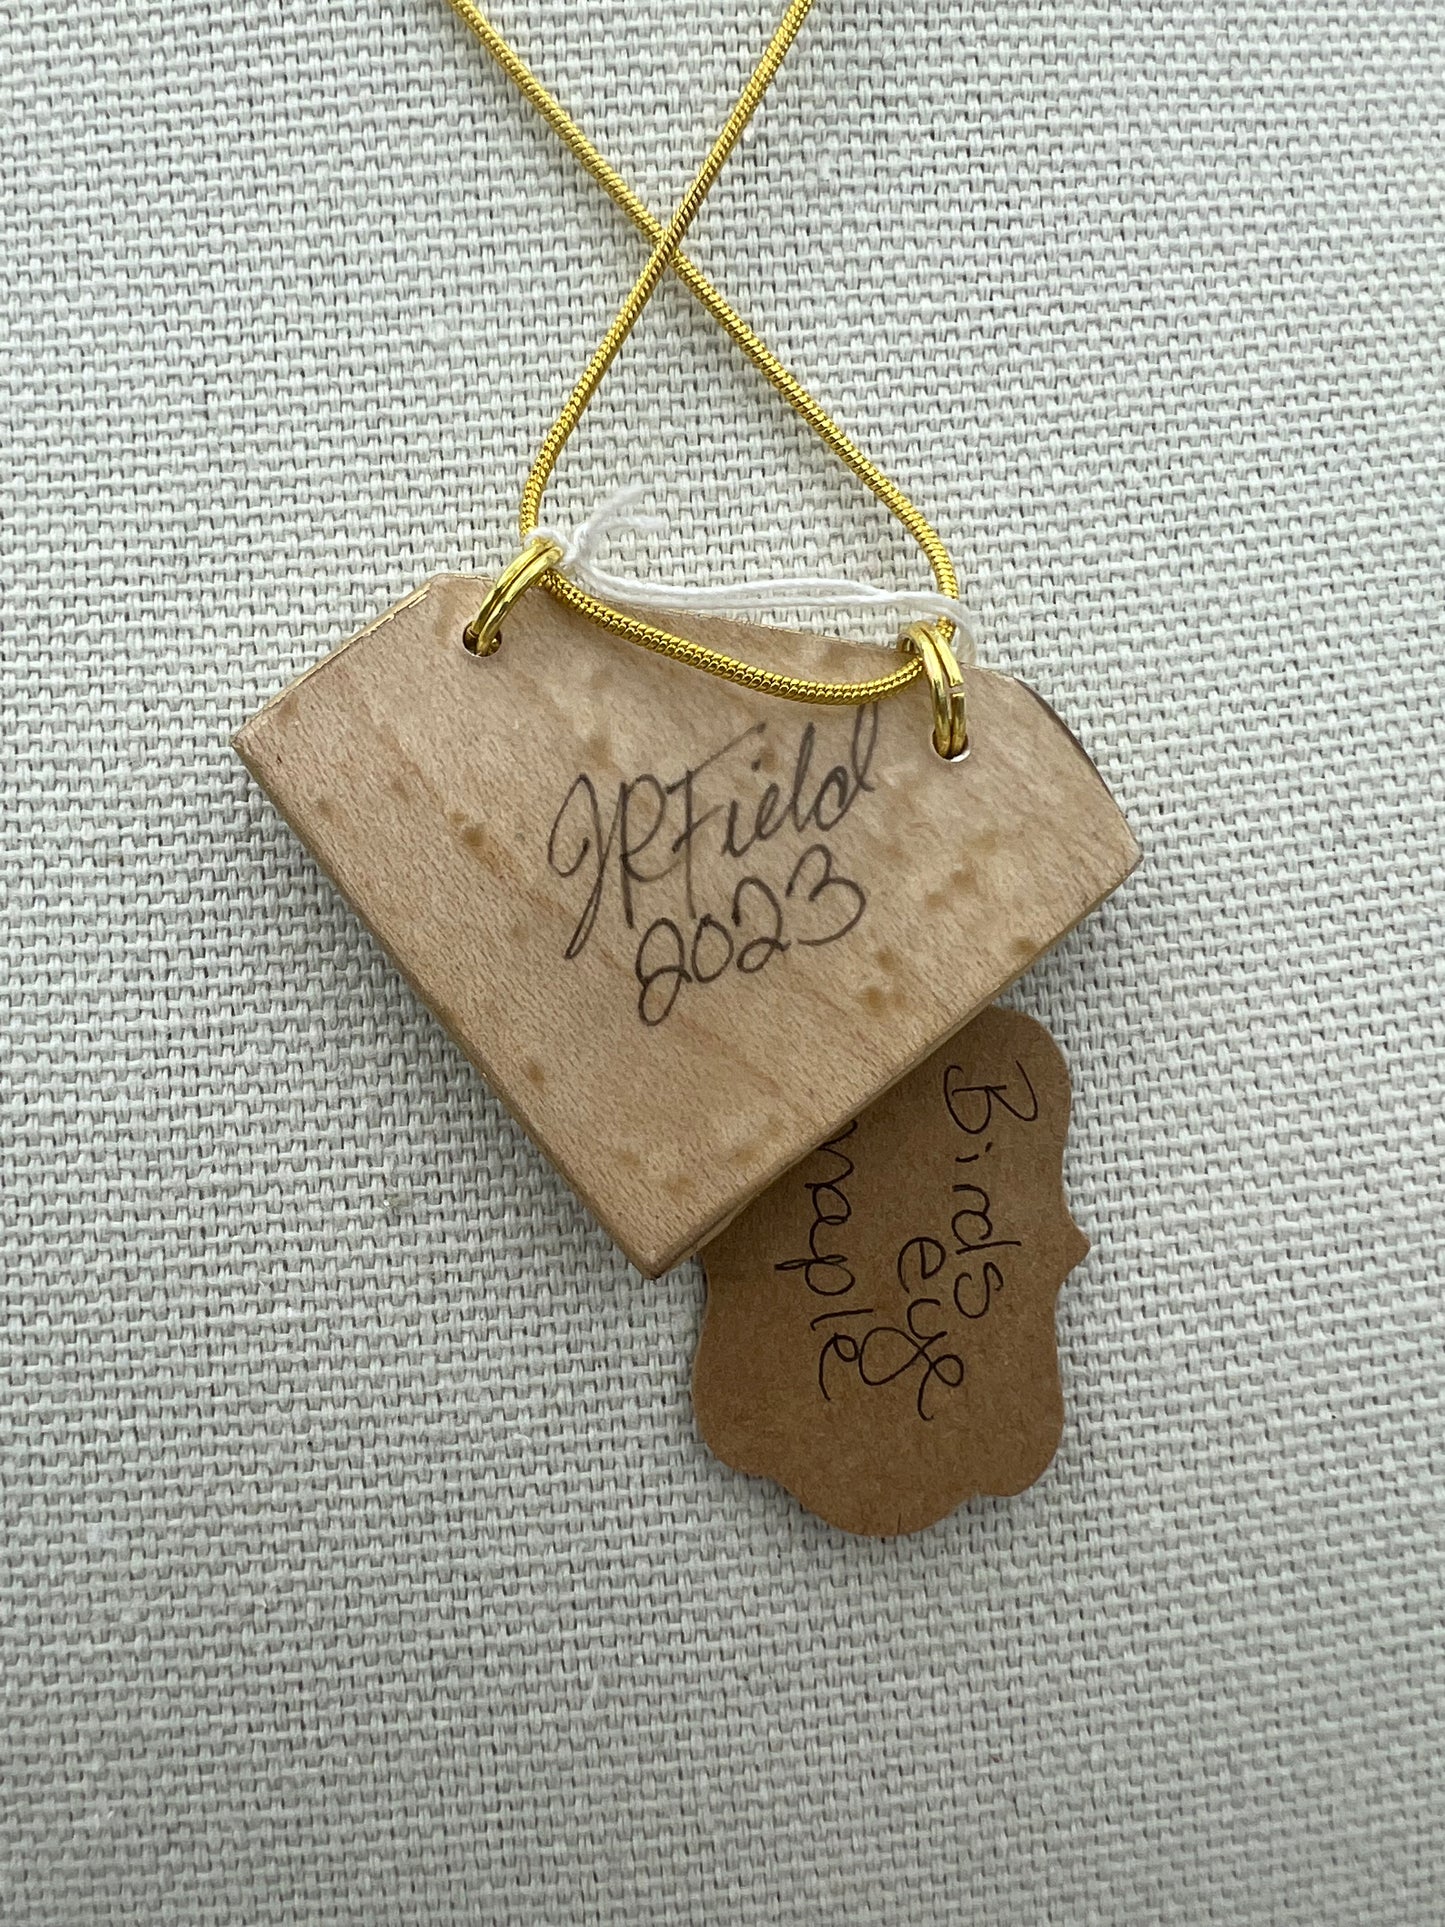 Wildflowers on Birdseye Maple - Wooden Pendant Necklace